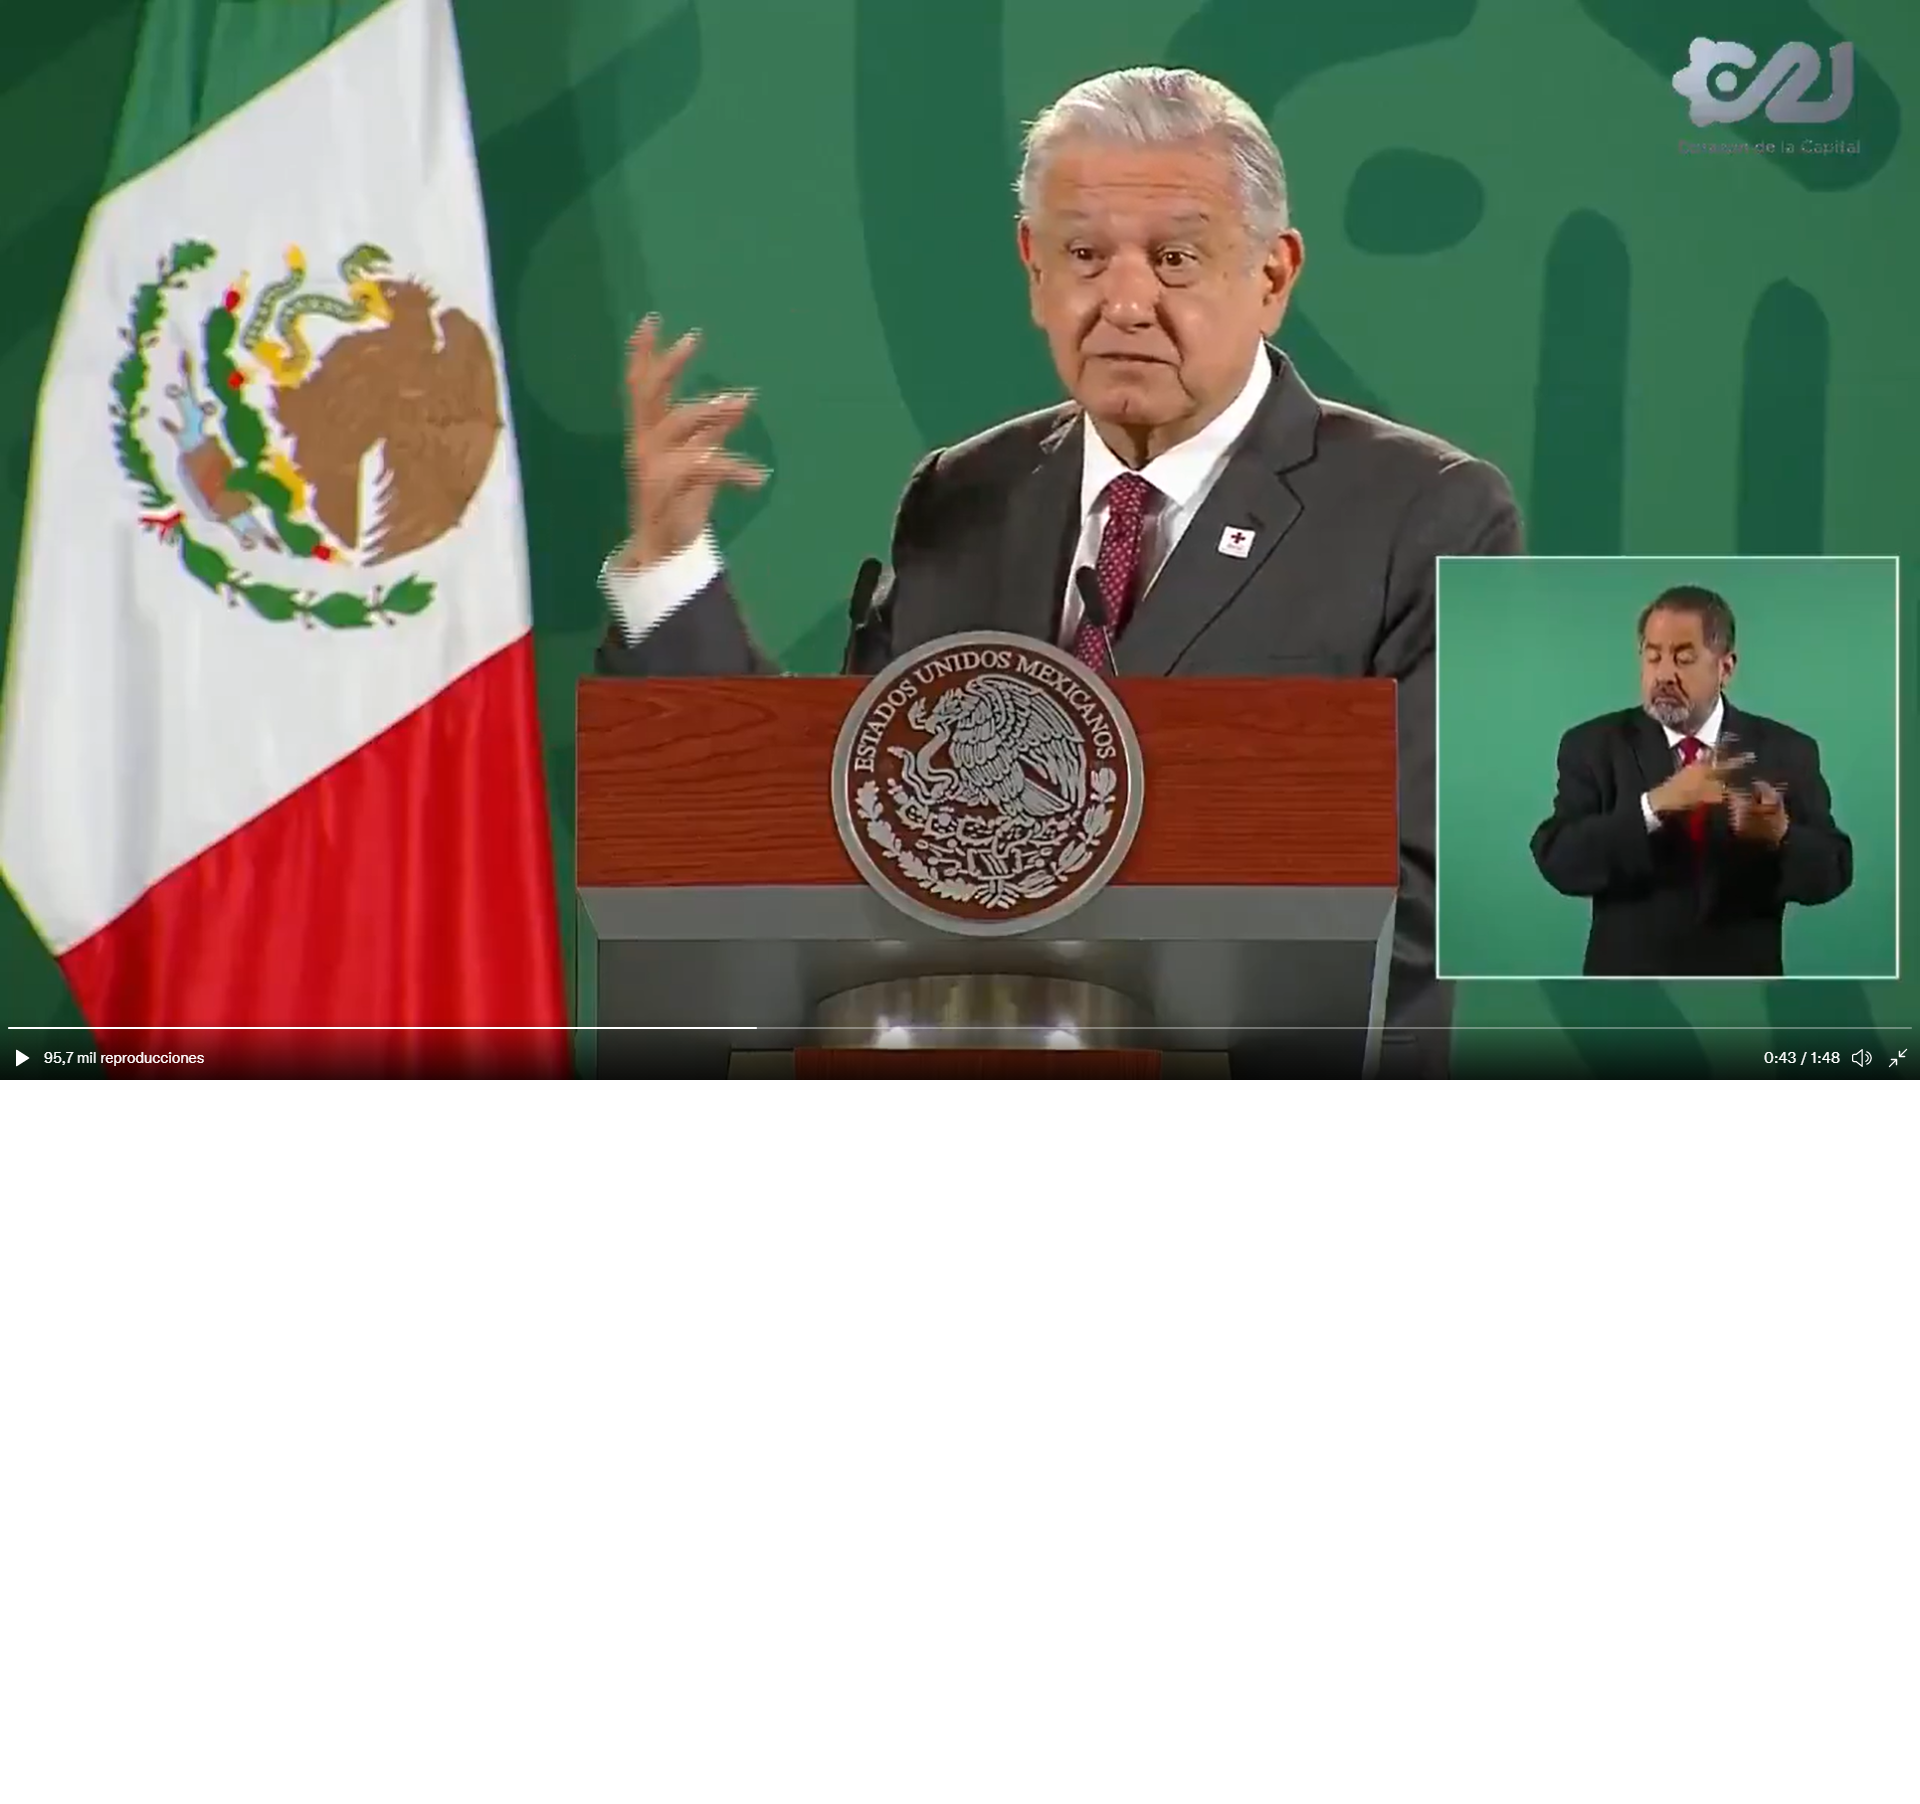 El president de Mèxic suca pa en els escàndols de Joan Carles I